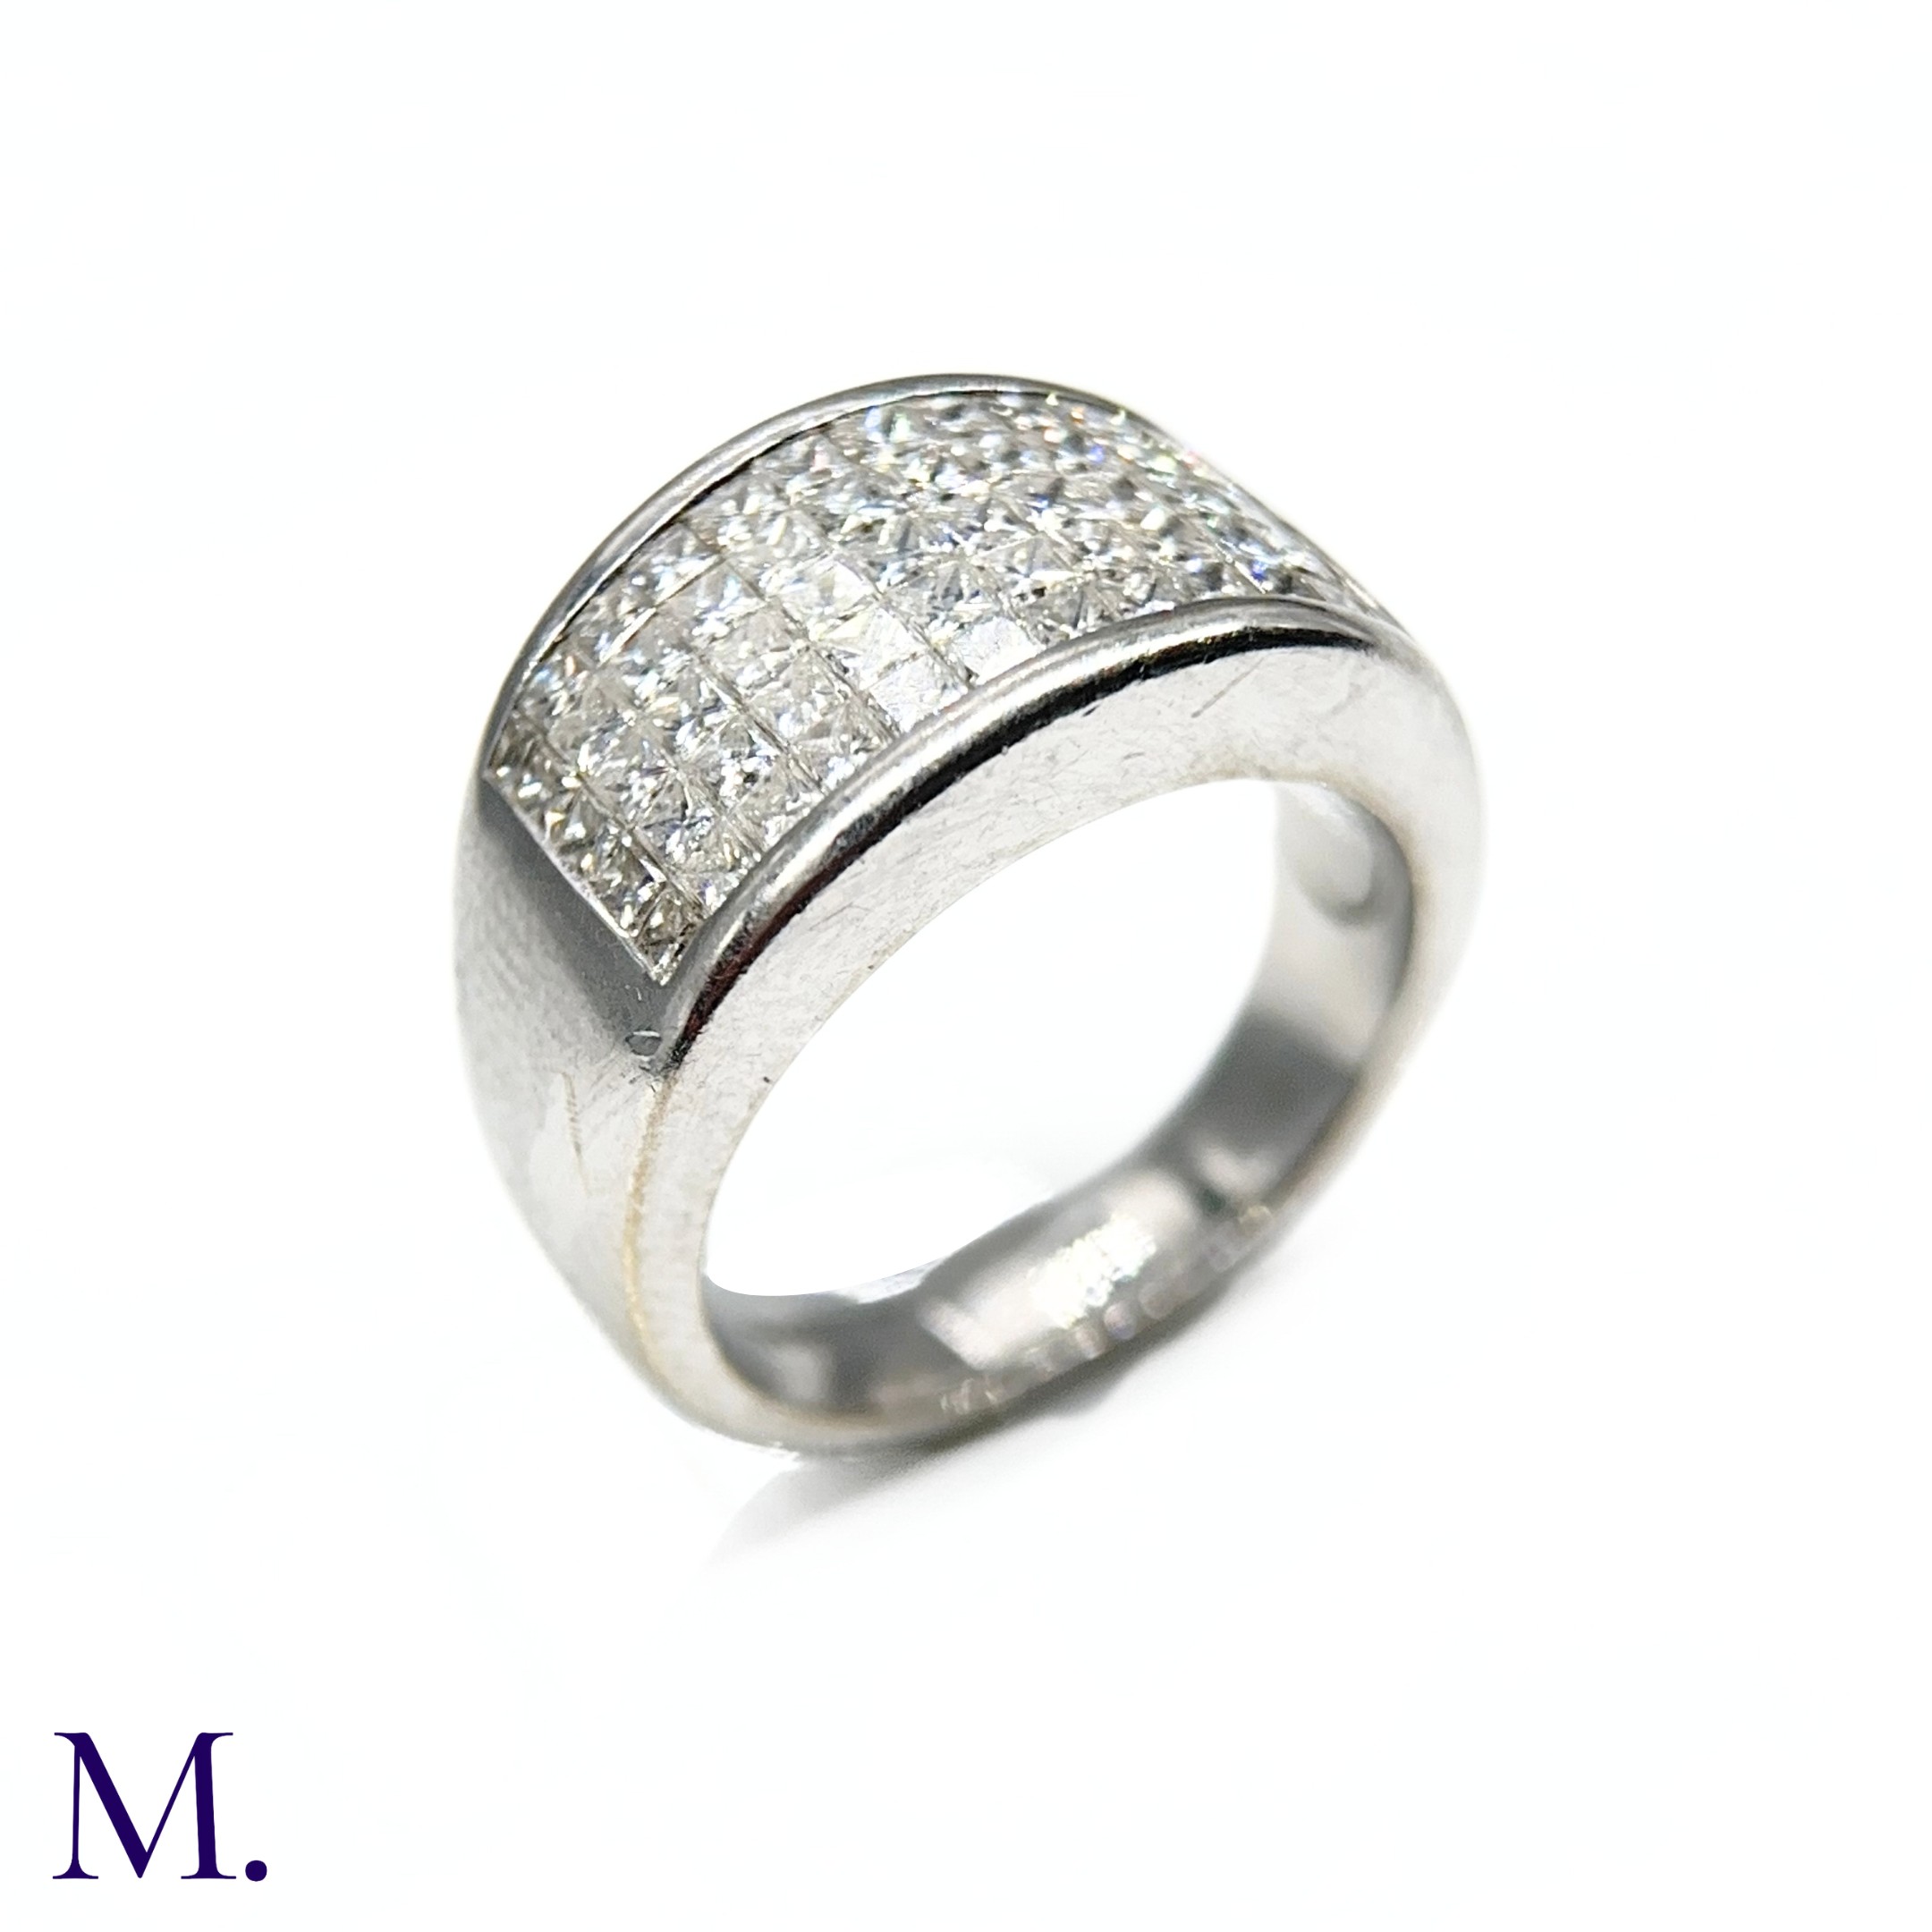 An 5-Row Asscher-cut Diamond Ring - Image 3 of 7